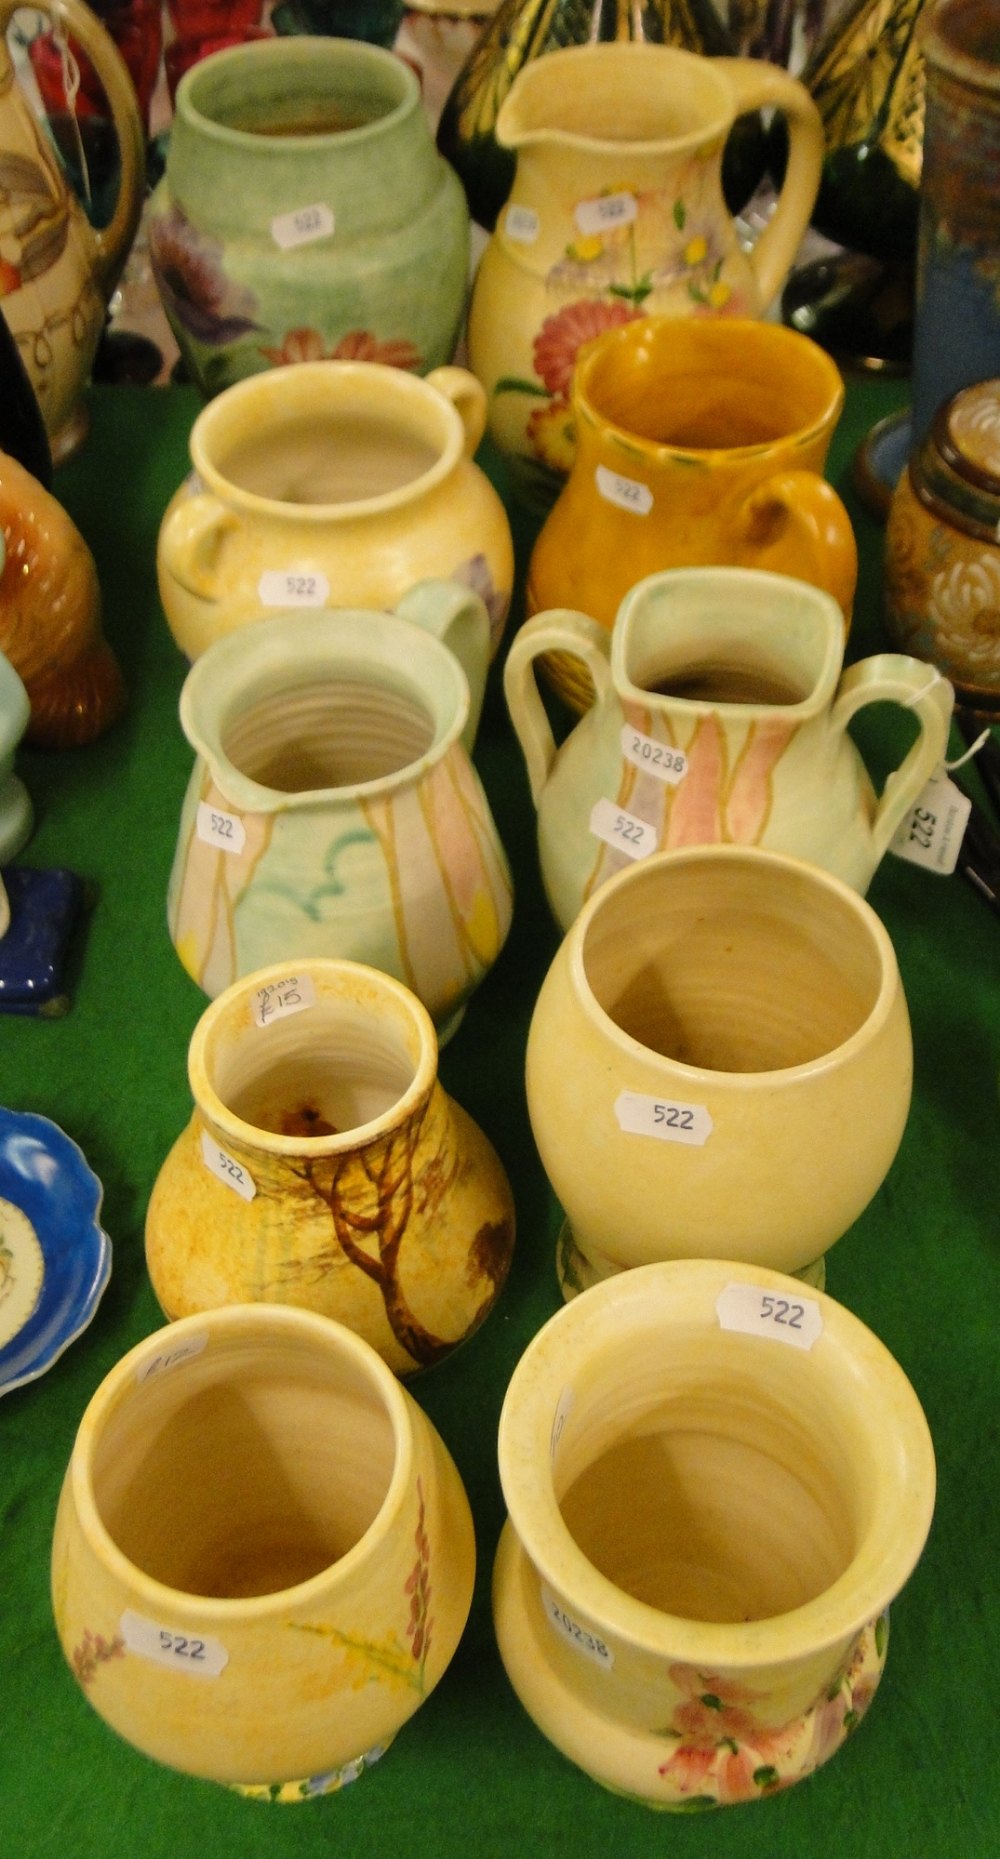 Radford vases and jugs.